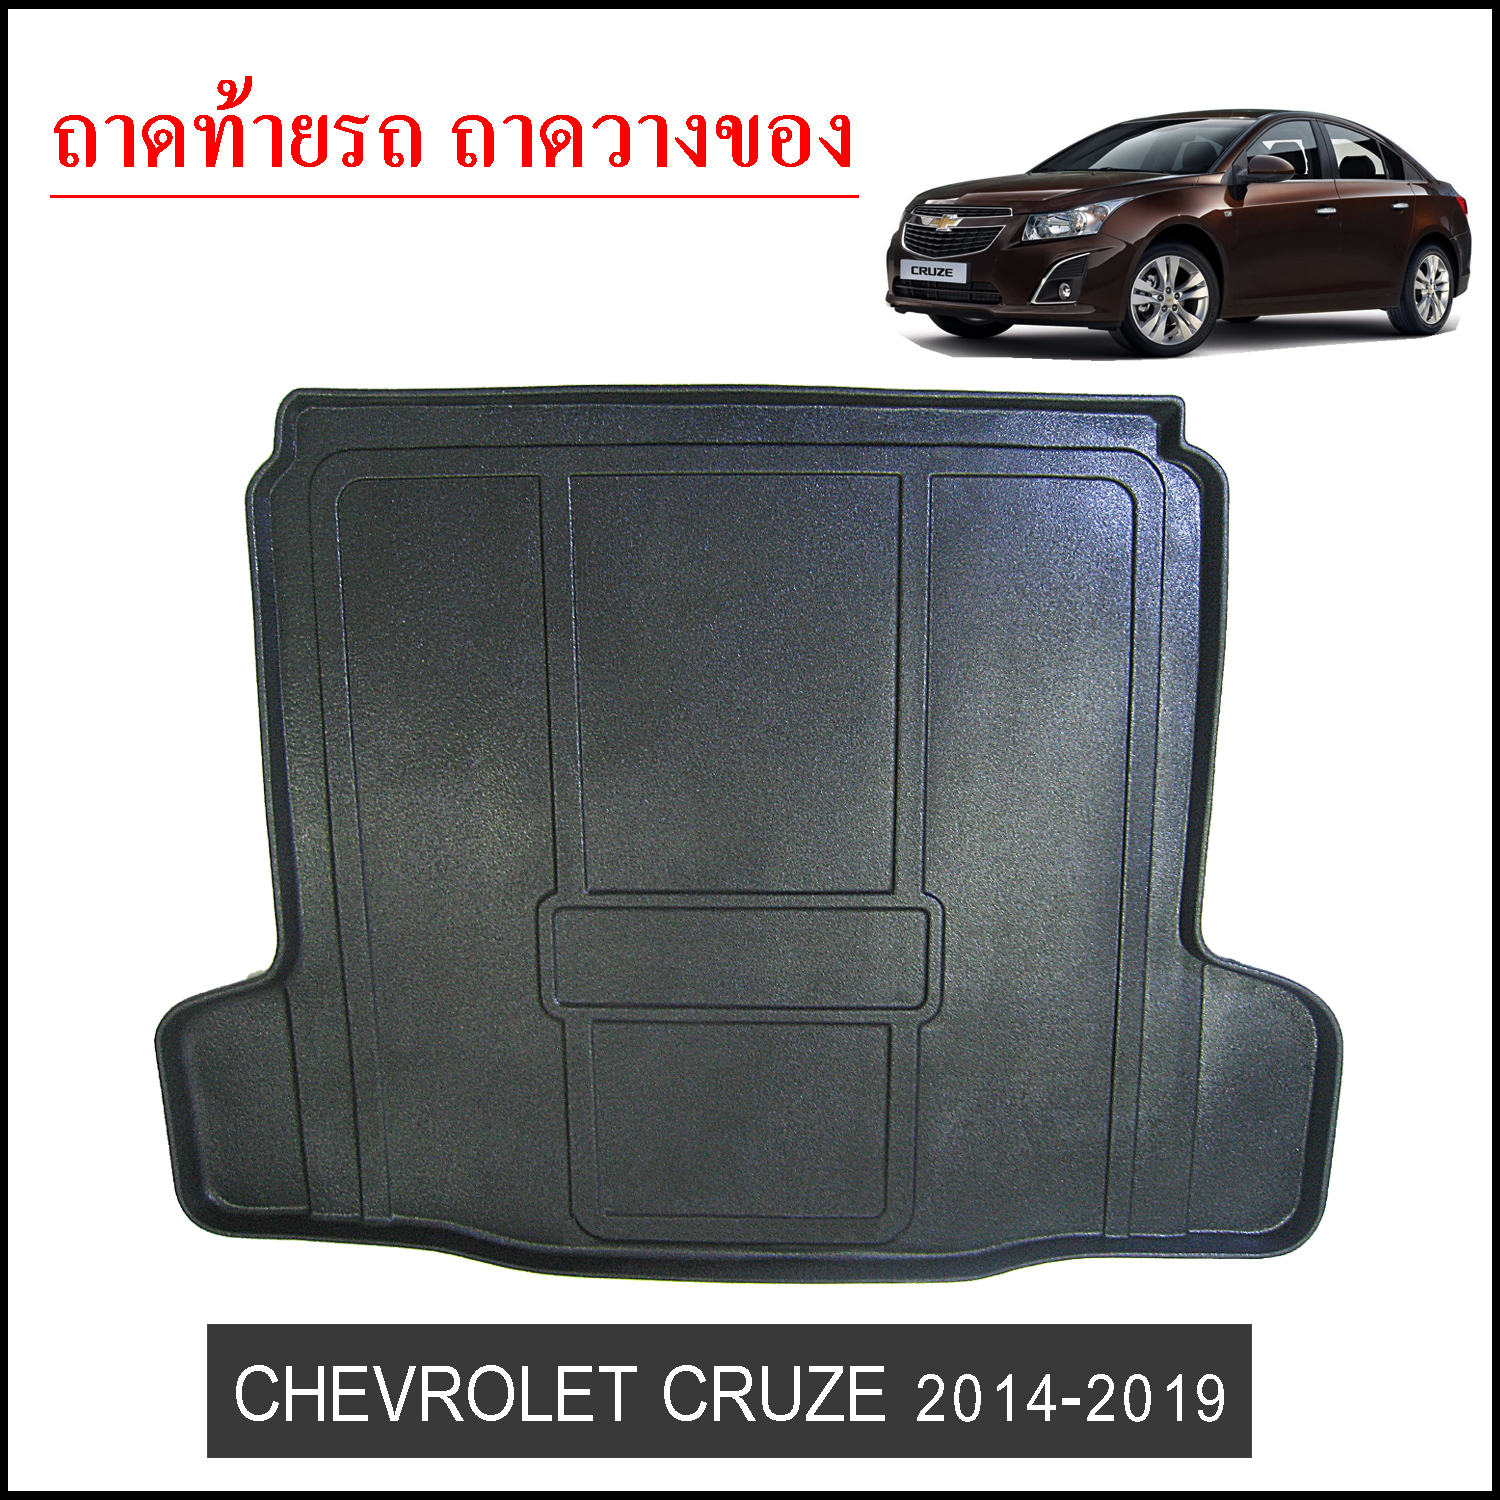 Chevrolet Cruze 2014-2019